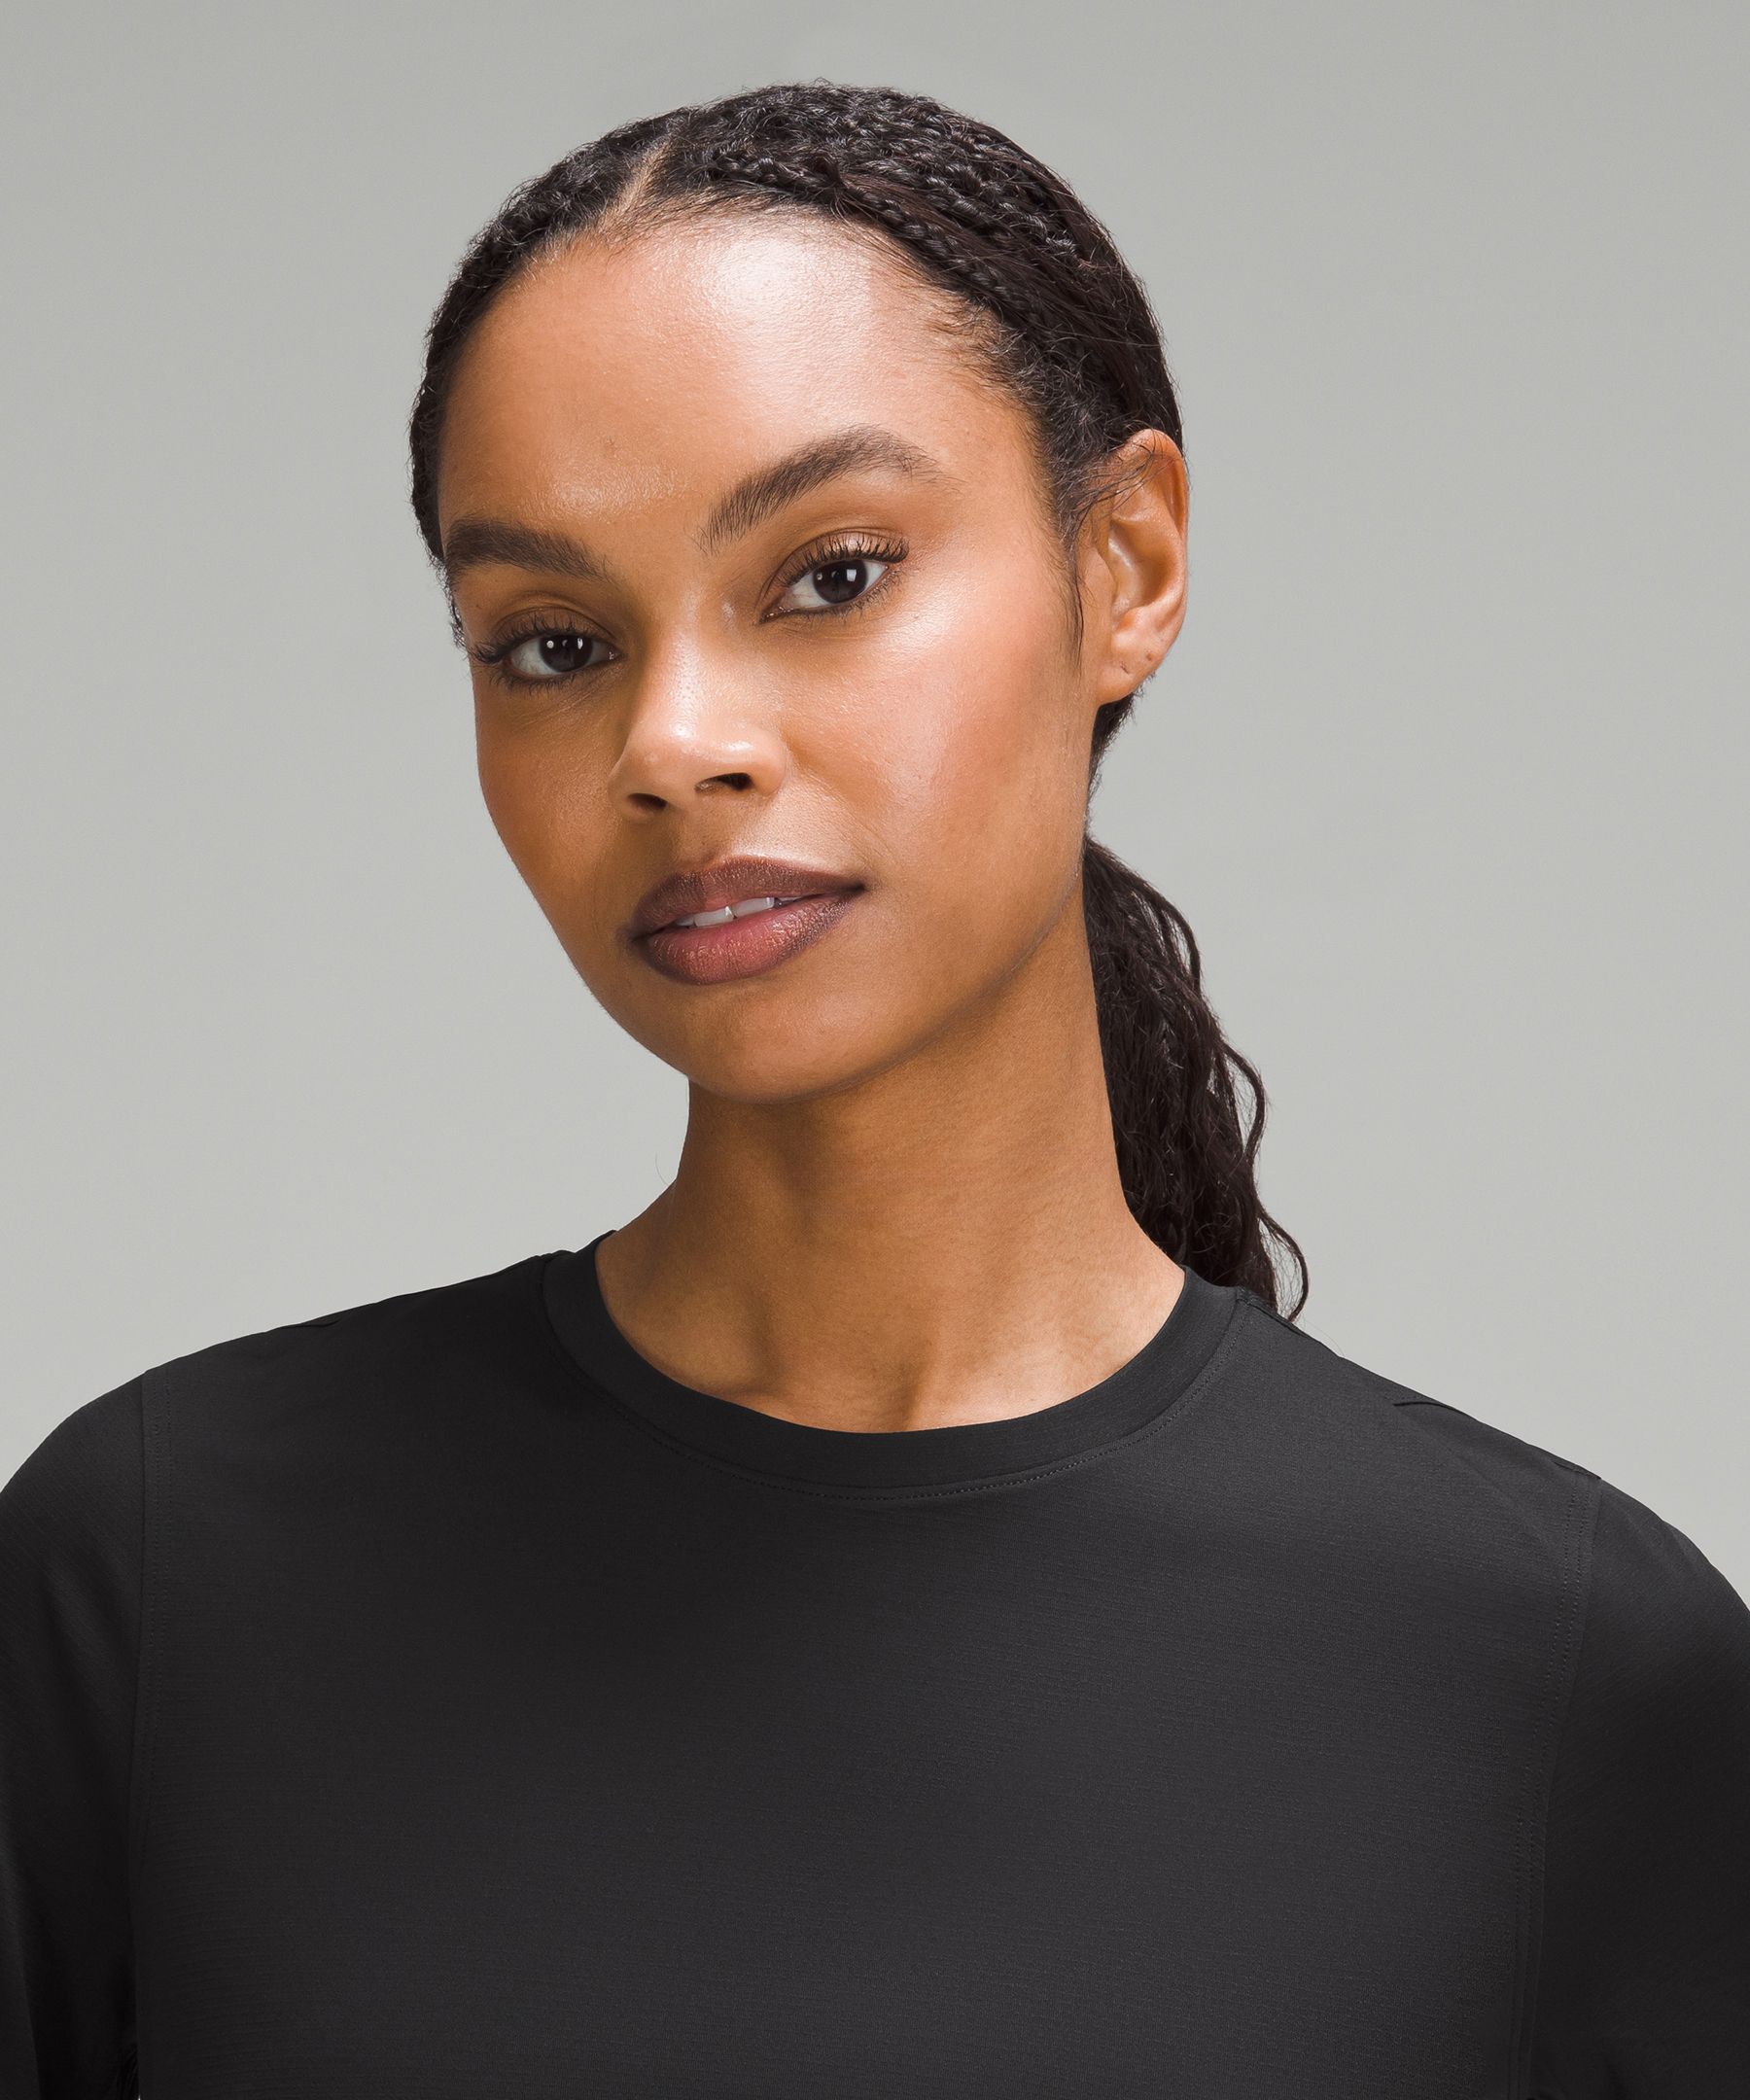 Ultralight Waist-Length T-Shirt | Women's Short Sleeve Shirts & Tee's